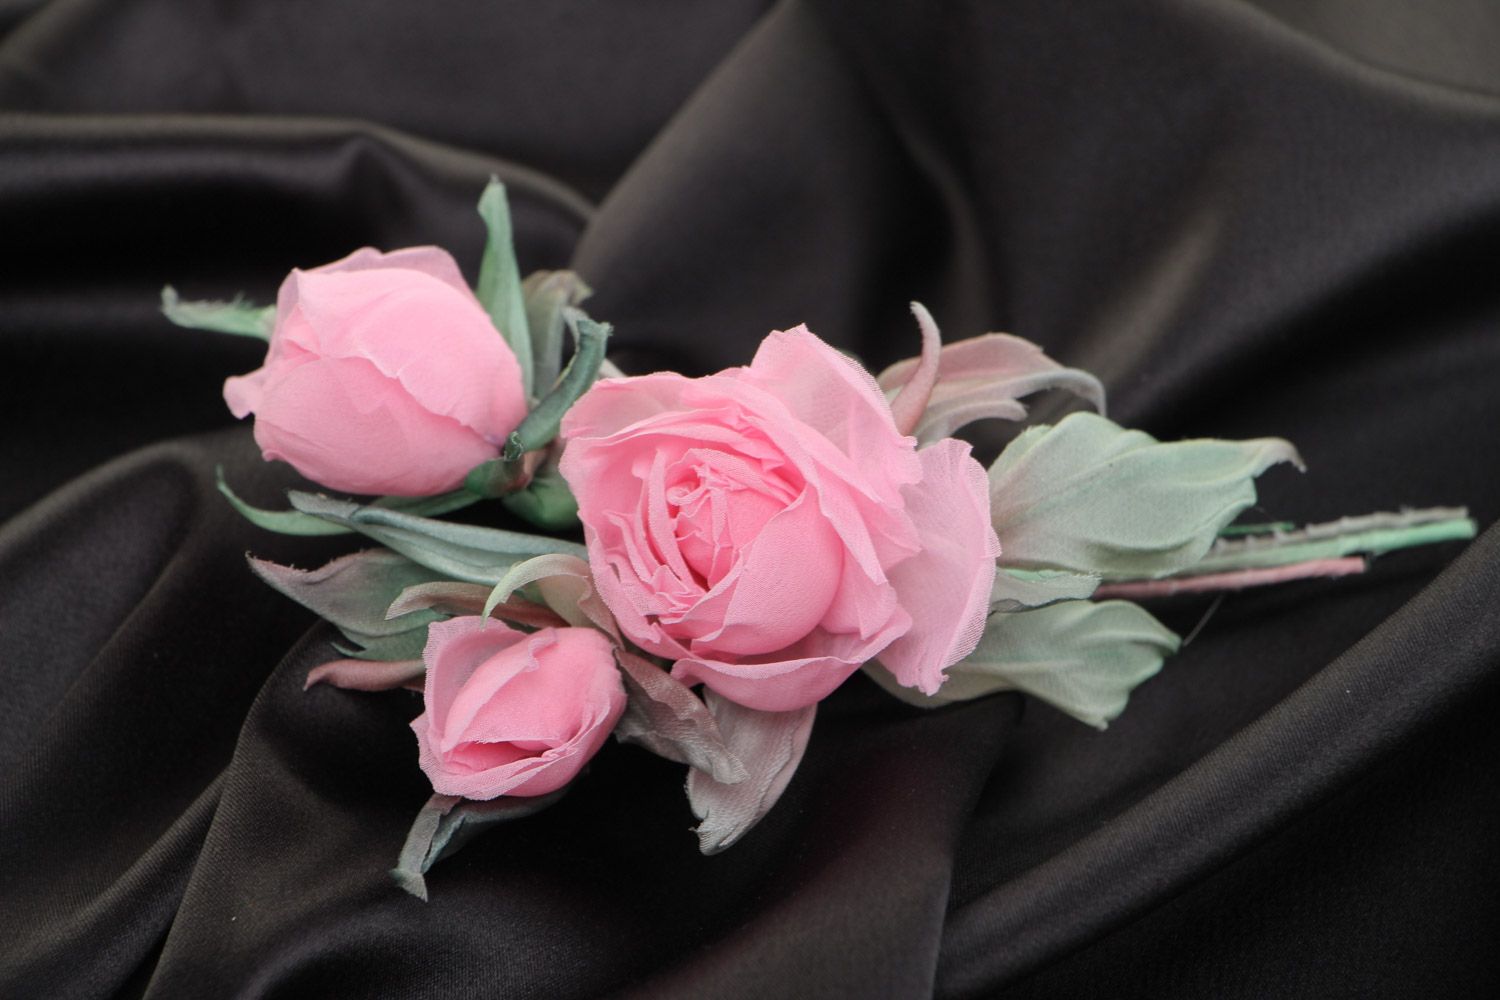 Брошь цветы из ткани розовая нежная красивая для девушки модная ручной работы фото 1